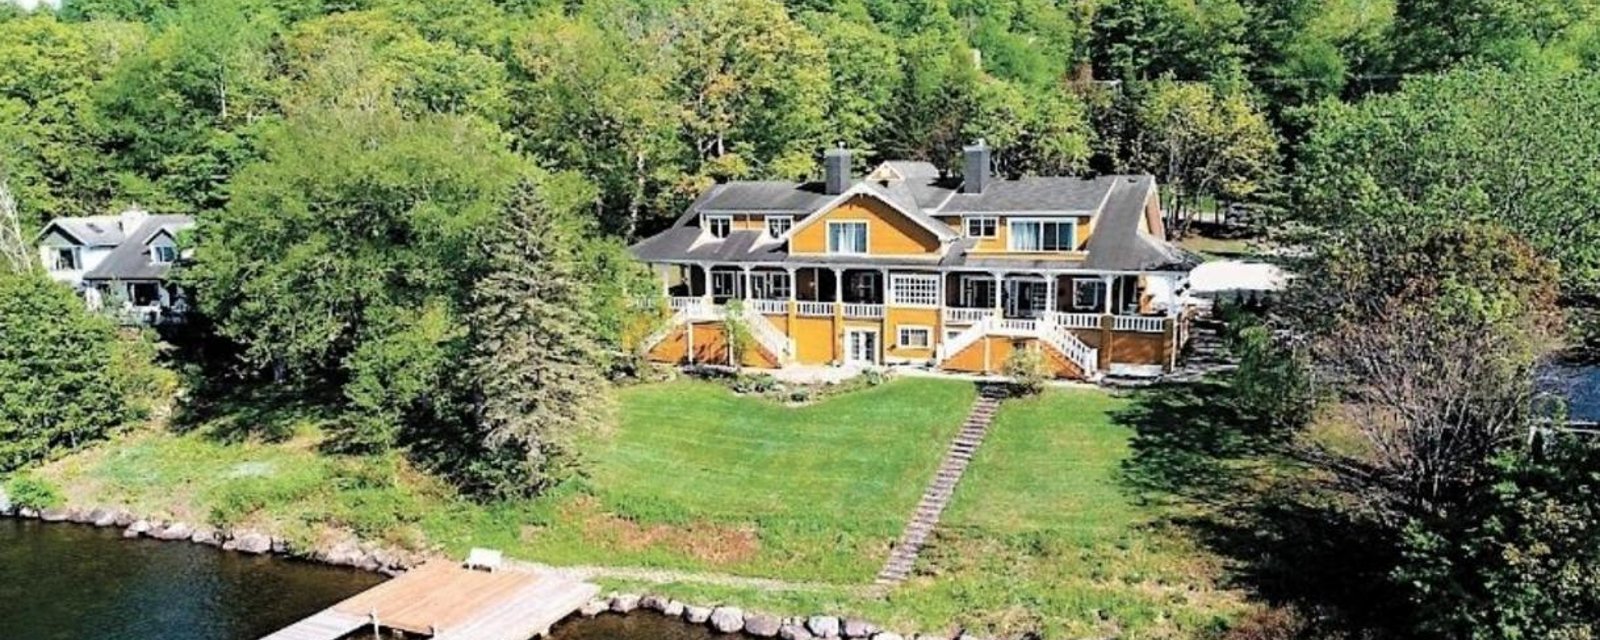 Un joueur de hockey achète une maison de 2 millions $ à Lac-Beauport pour la détruire